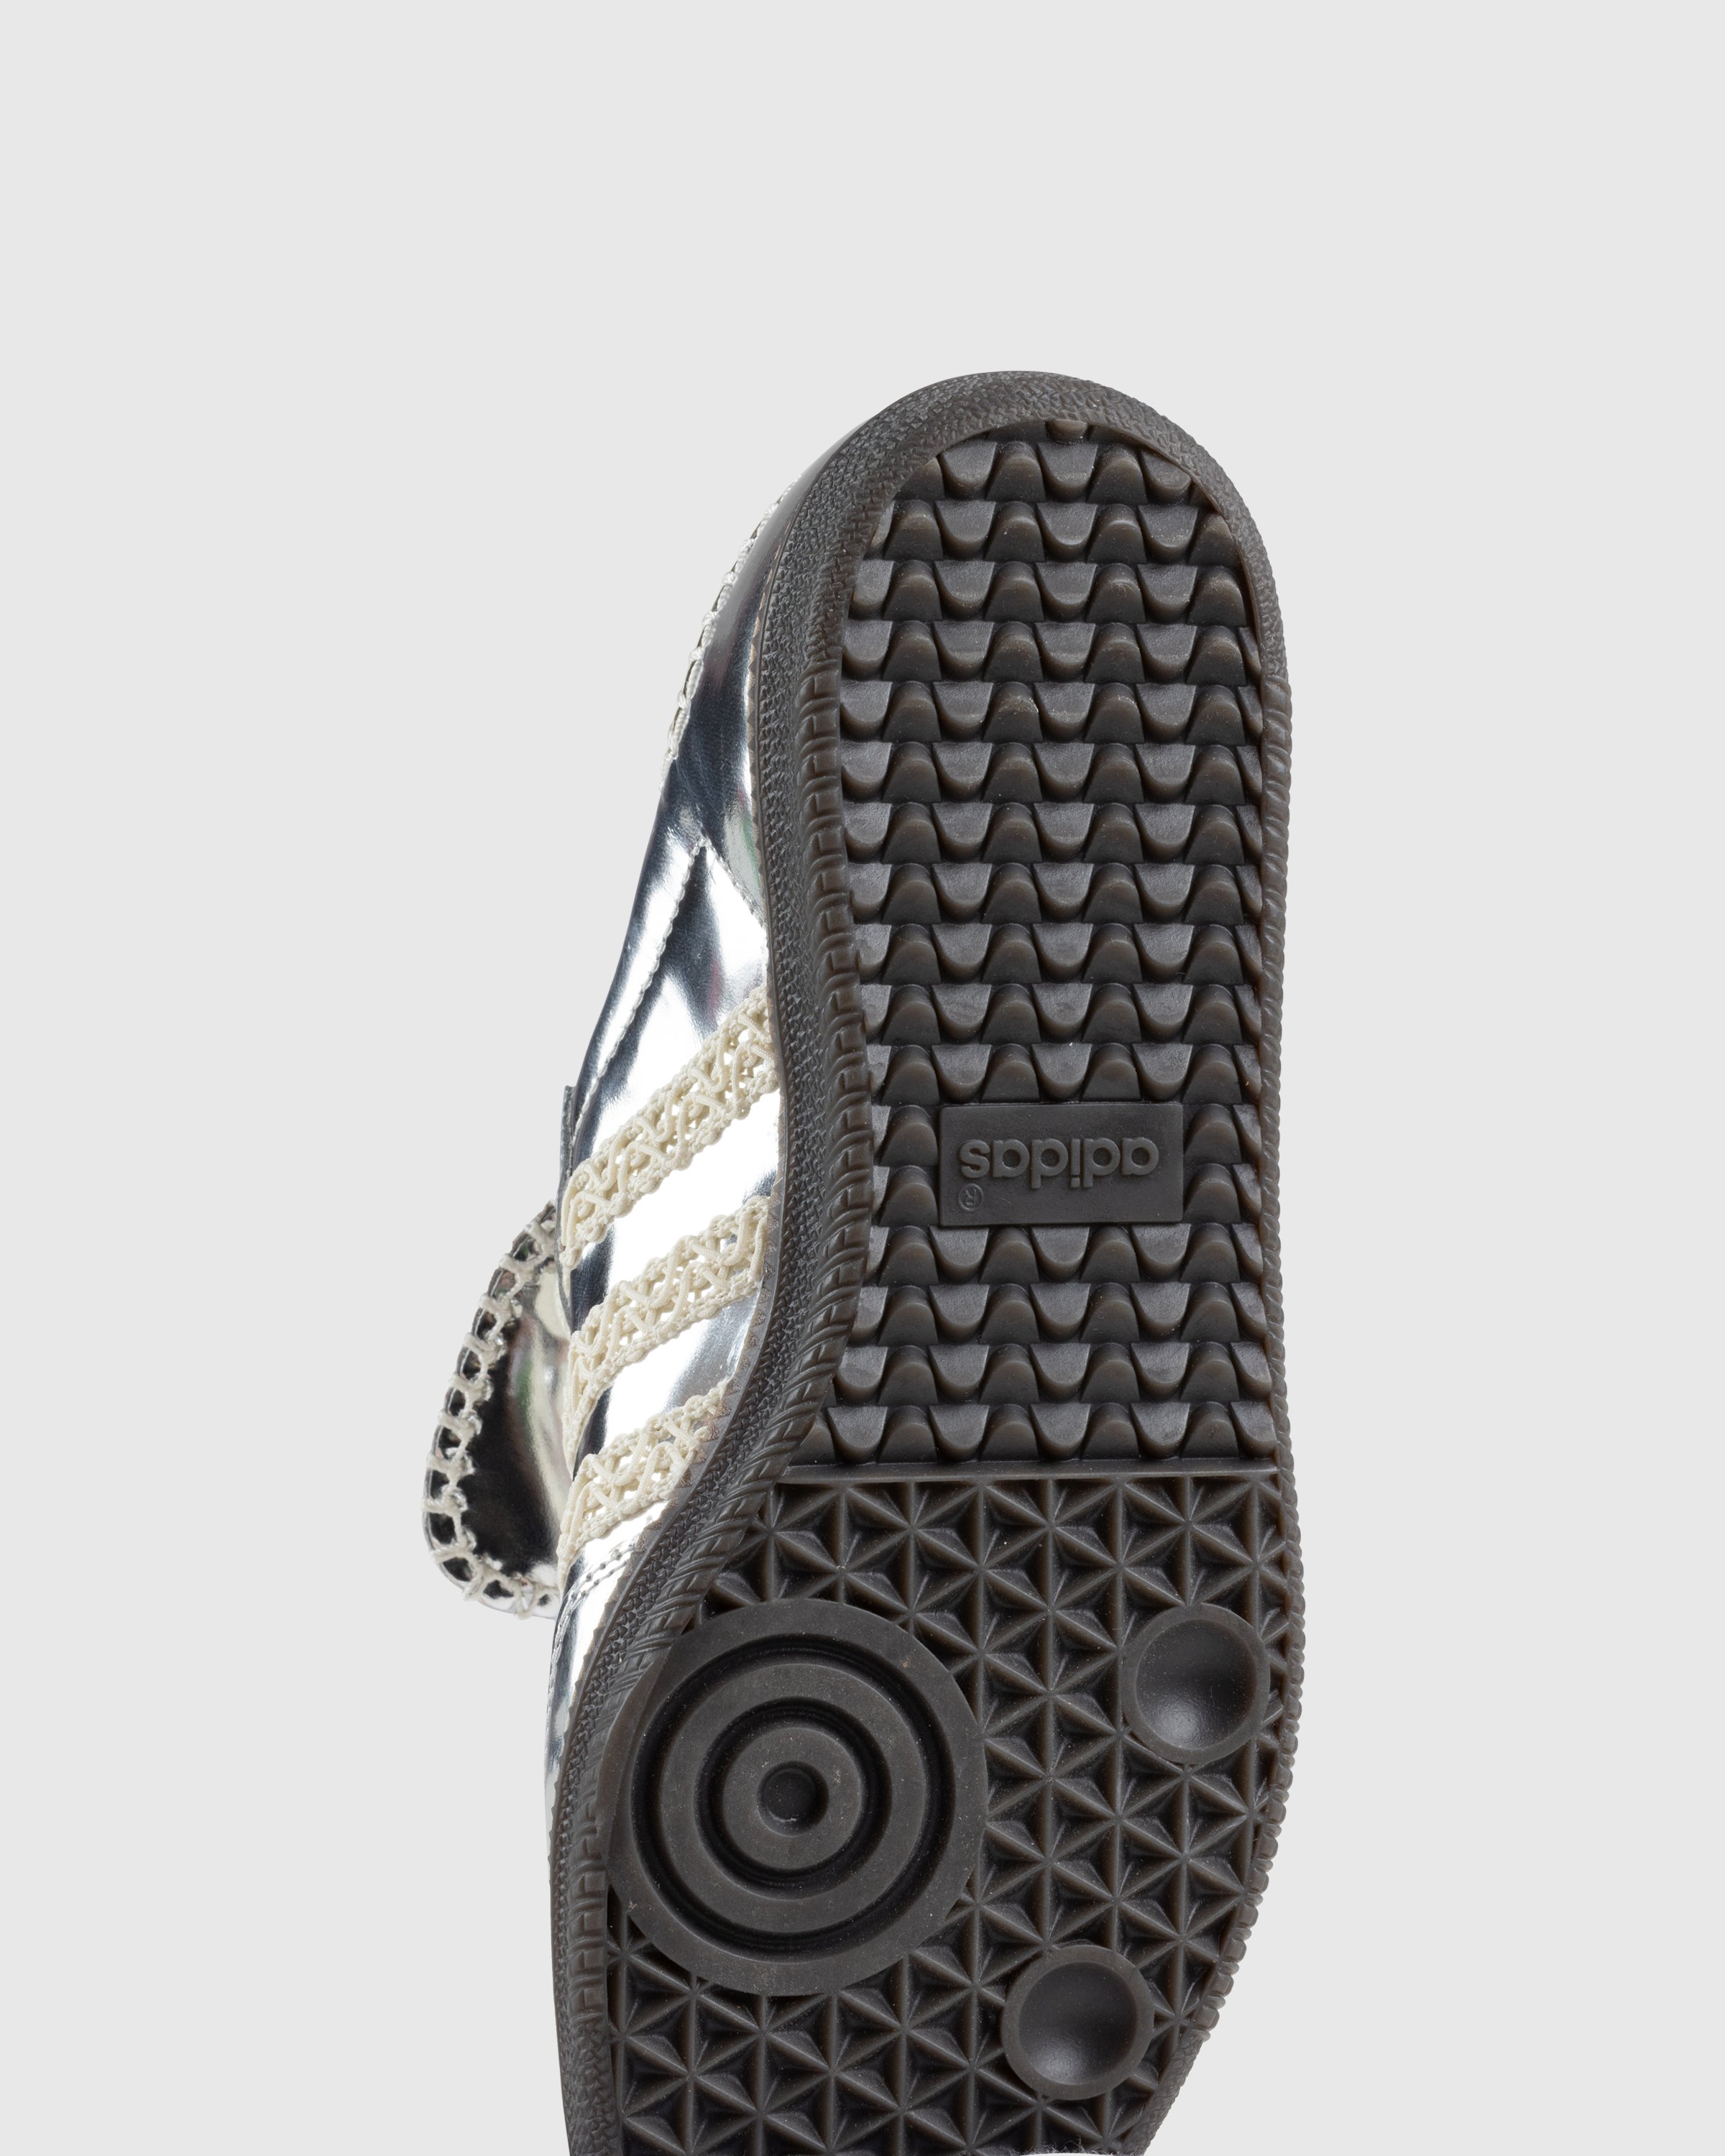 Adidas x Wales Bonner - Samba Metallic Silver/Cream White/Grey - Footwear - Silver - Image 6